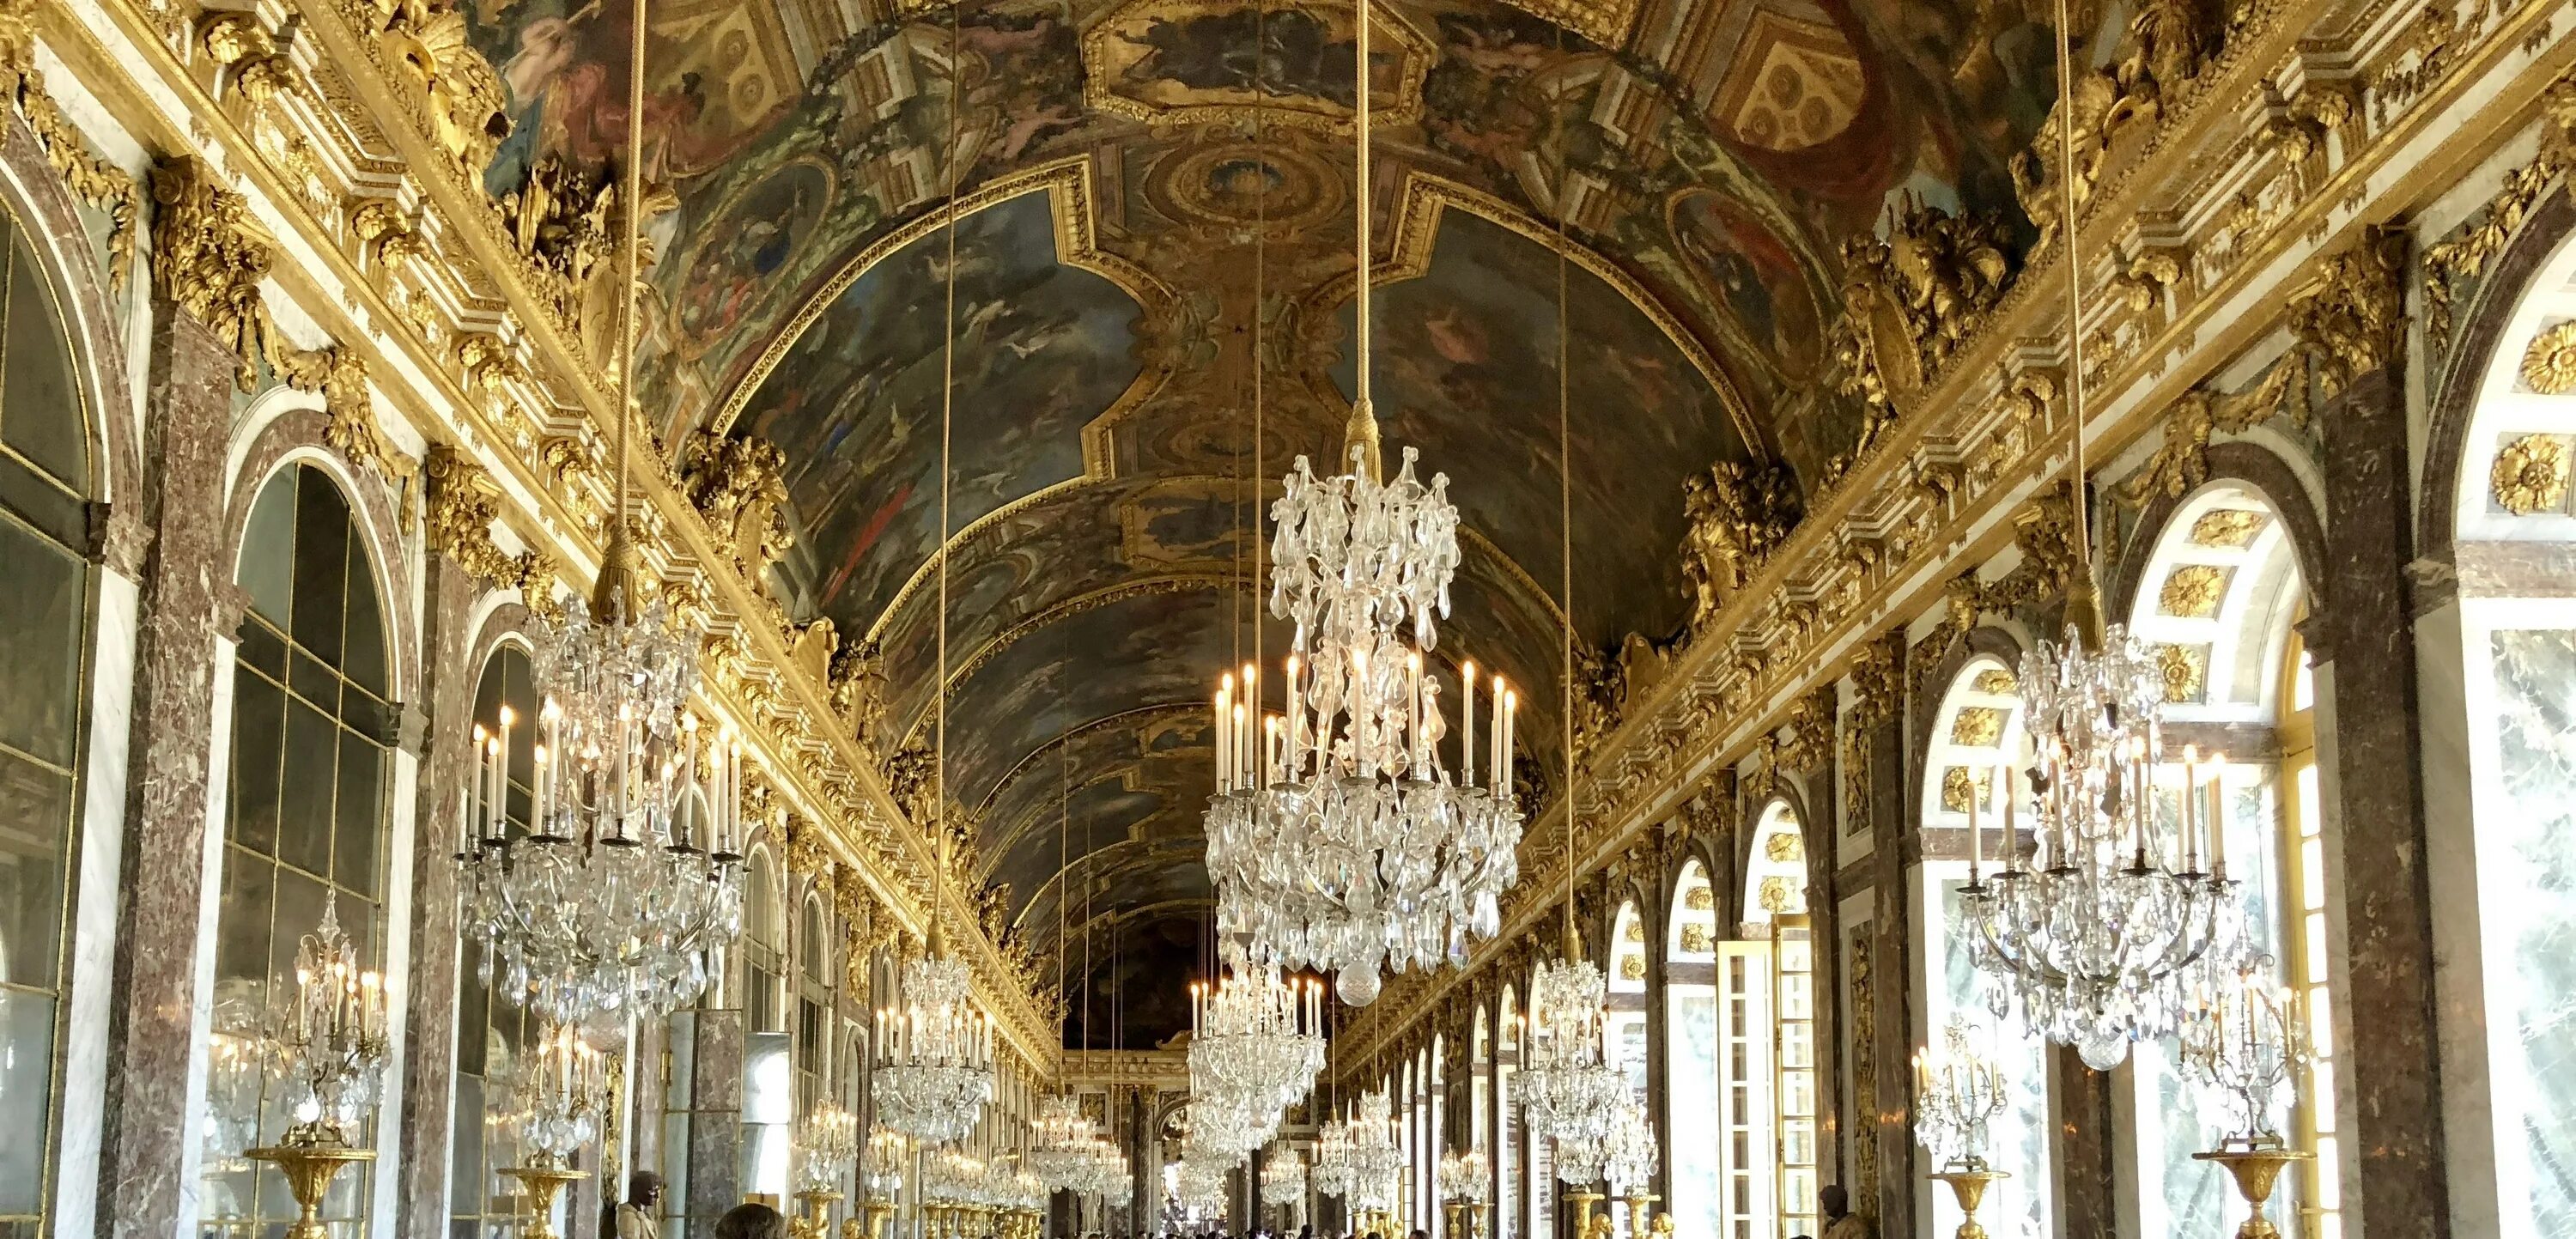 Версальский дворец зал войны. Версаль зеркальная галерея Версальского дворца. Версальский дворец Версаль внутри.